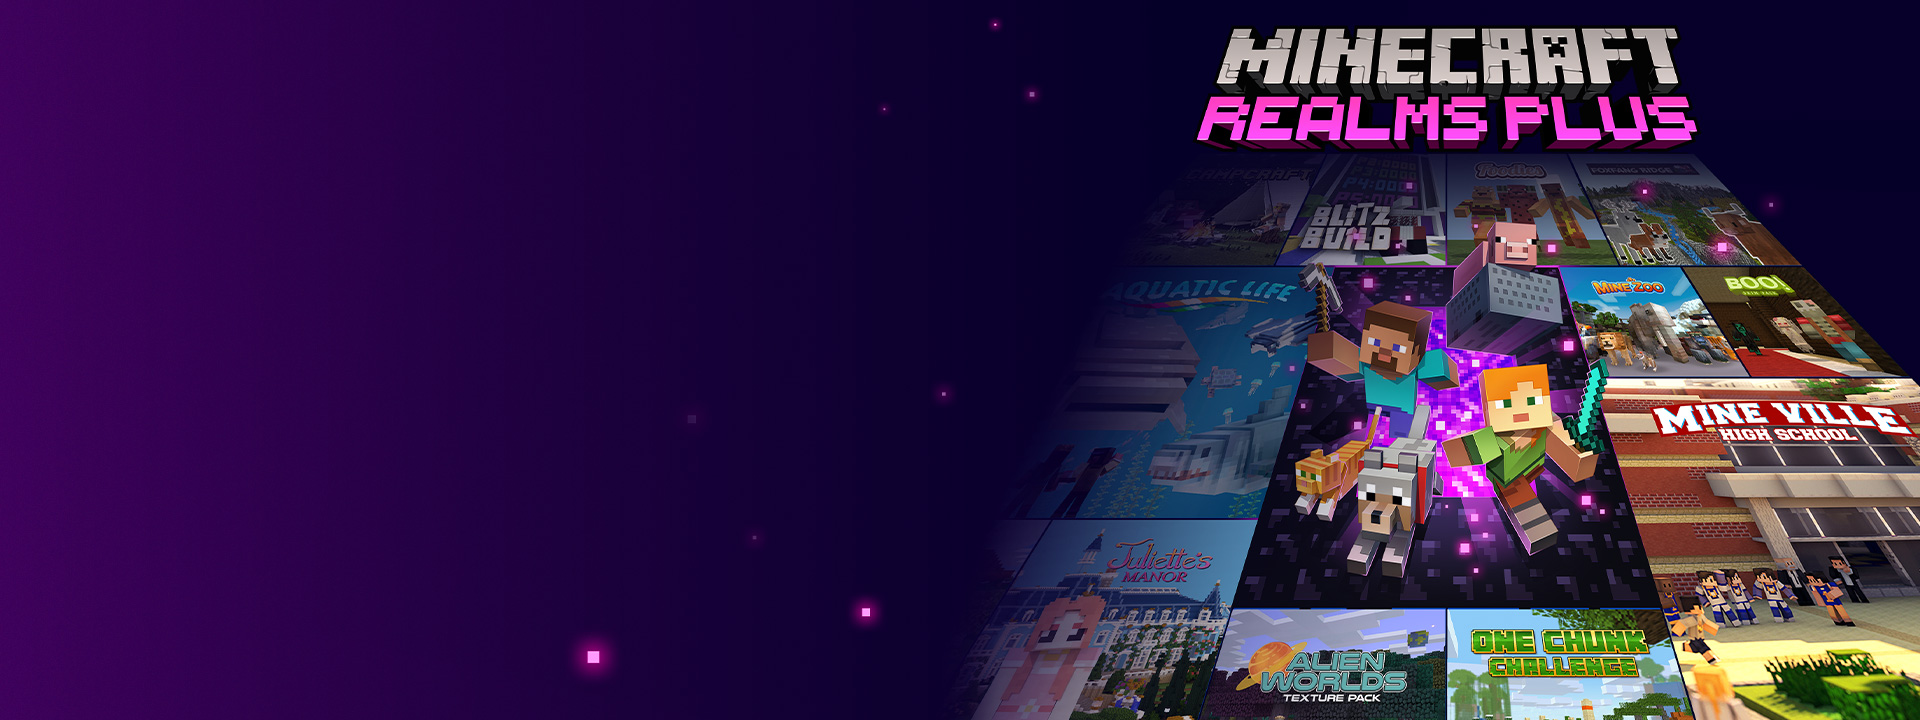 Minecraft Realms Plus, Minecraft-figurer som kommer ut av en Nether-portal med andre coverbilder ved siden av